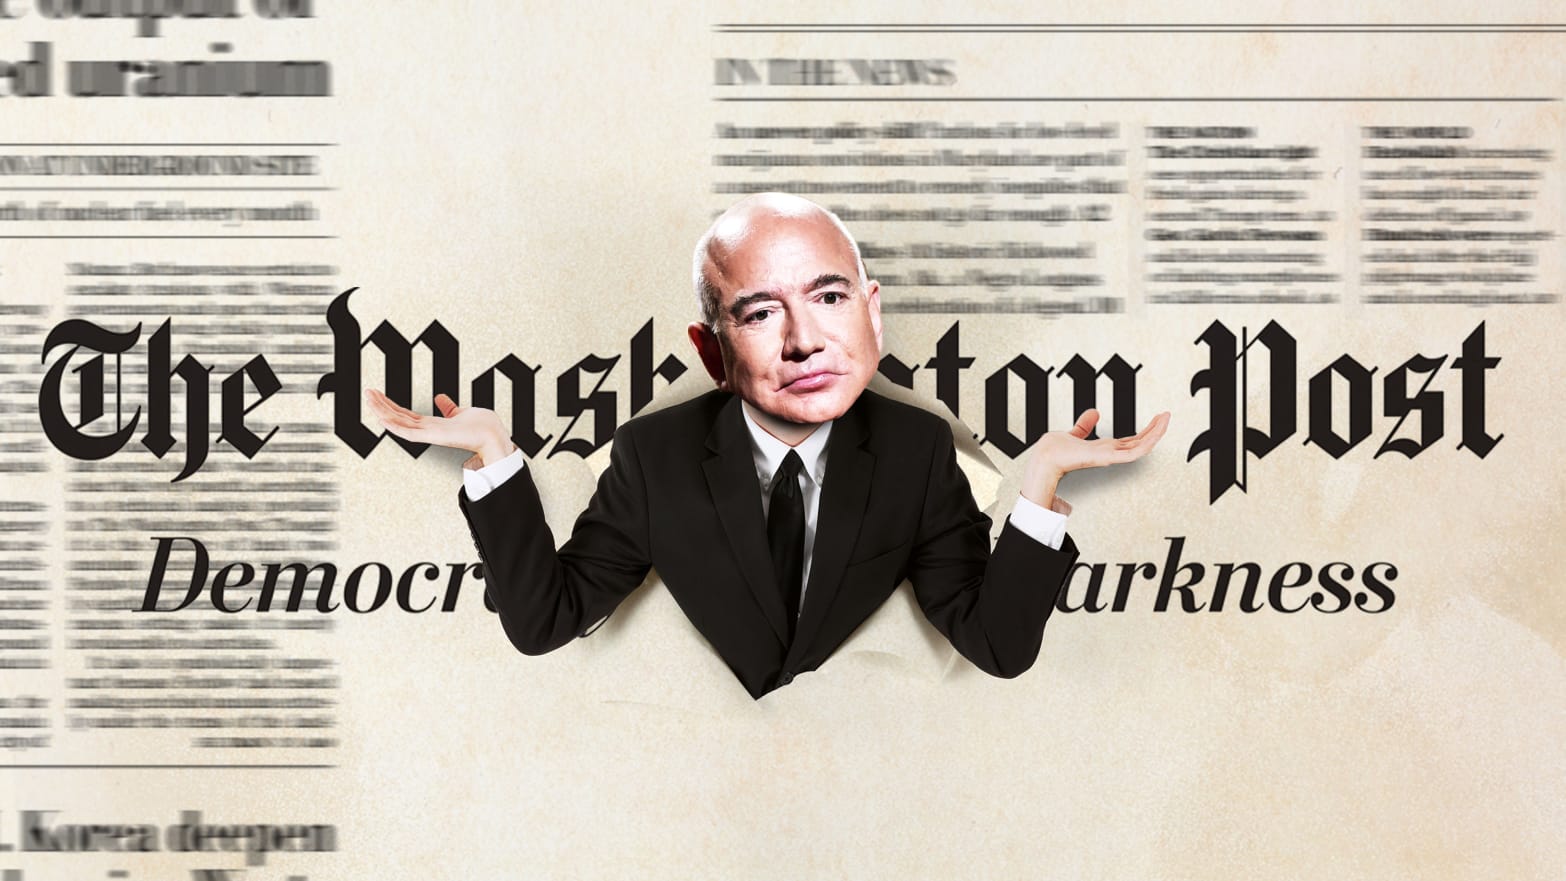 A photo illustration of Jeff Bezos bursting through the Washington Post logo